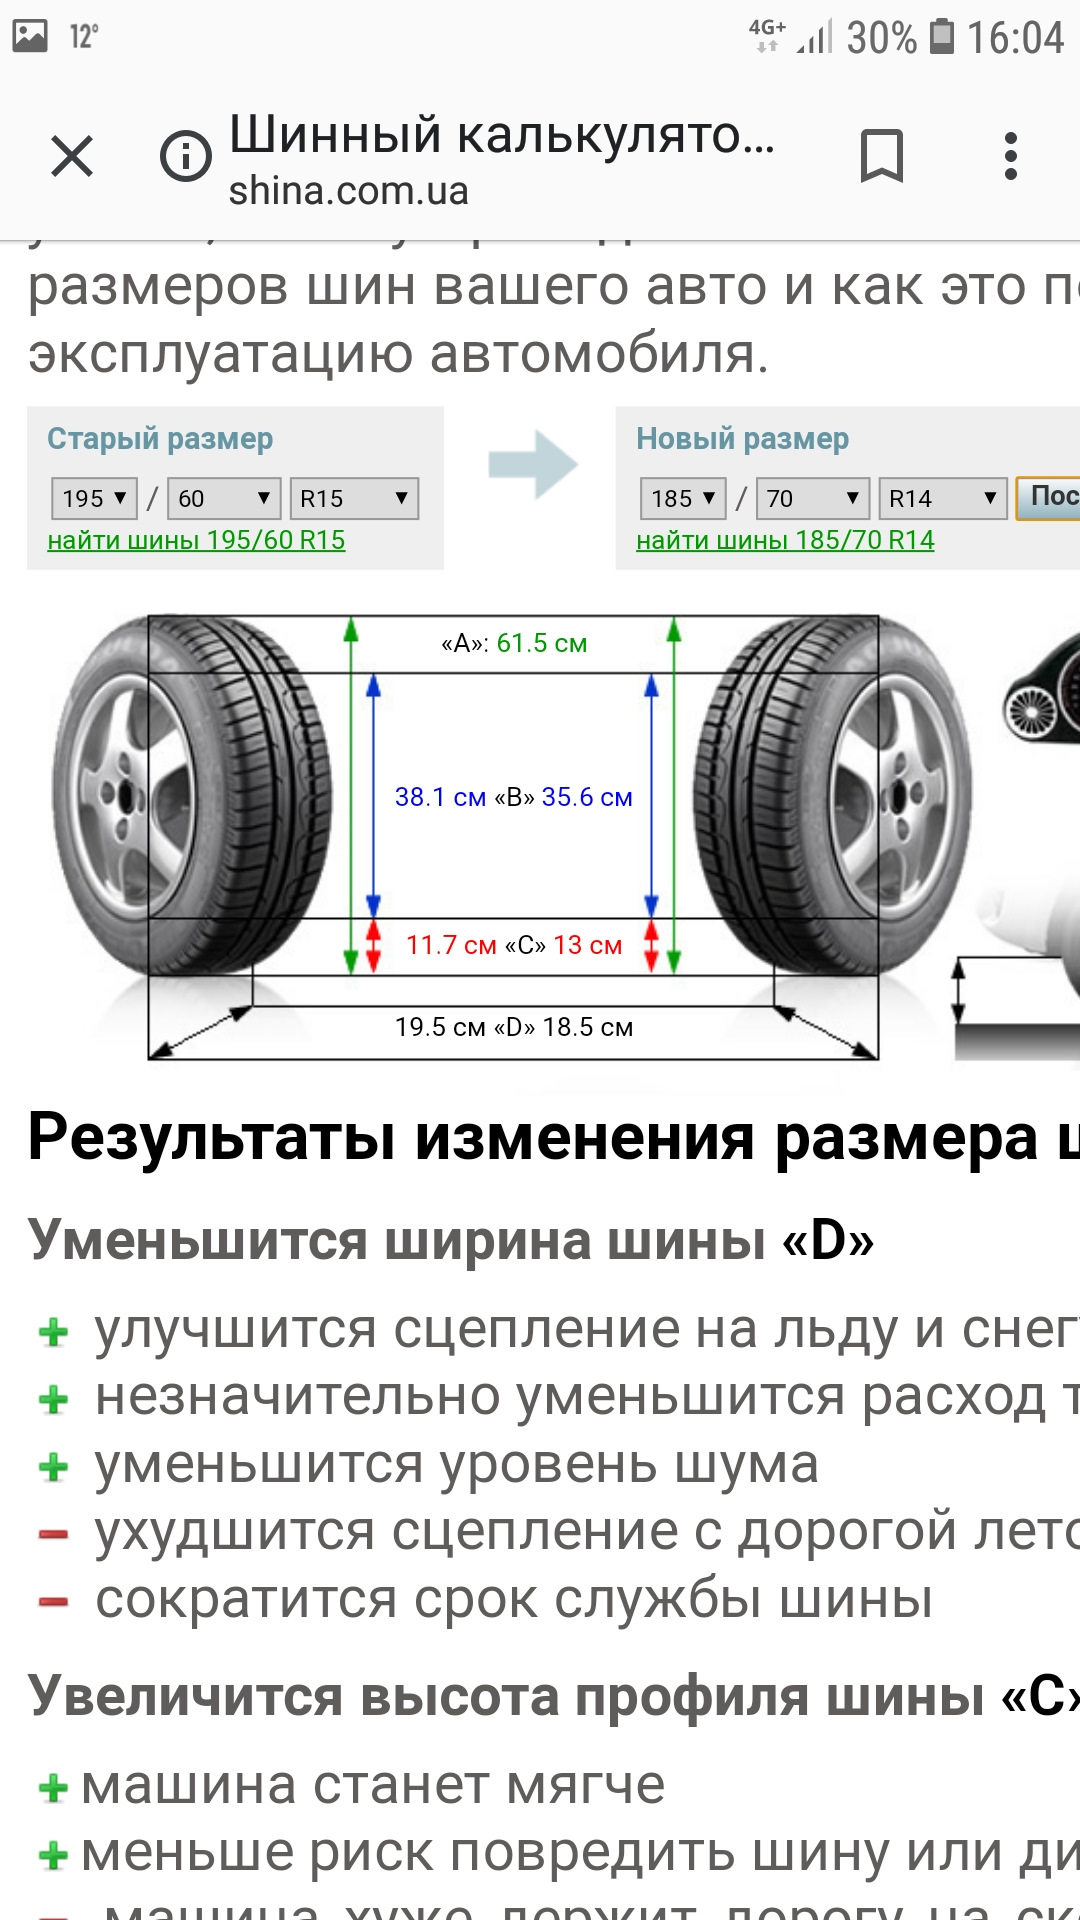 Какие шины ставить на машину. Ширина профиля на шинах 185/70 r14. Как узнать какого диаметра шины автомобильные. Ширина покрышки с профилем 245. Как определить размер колес авто.